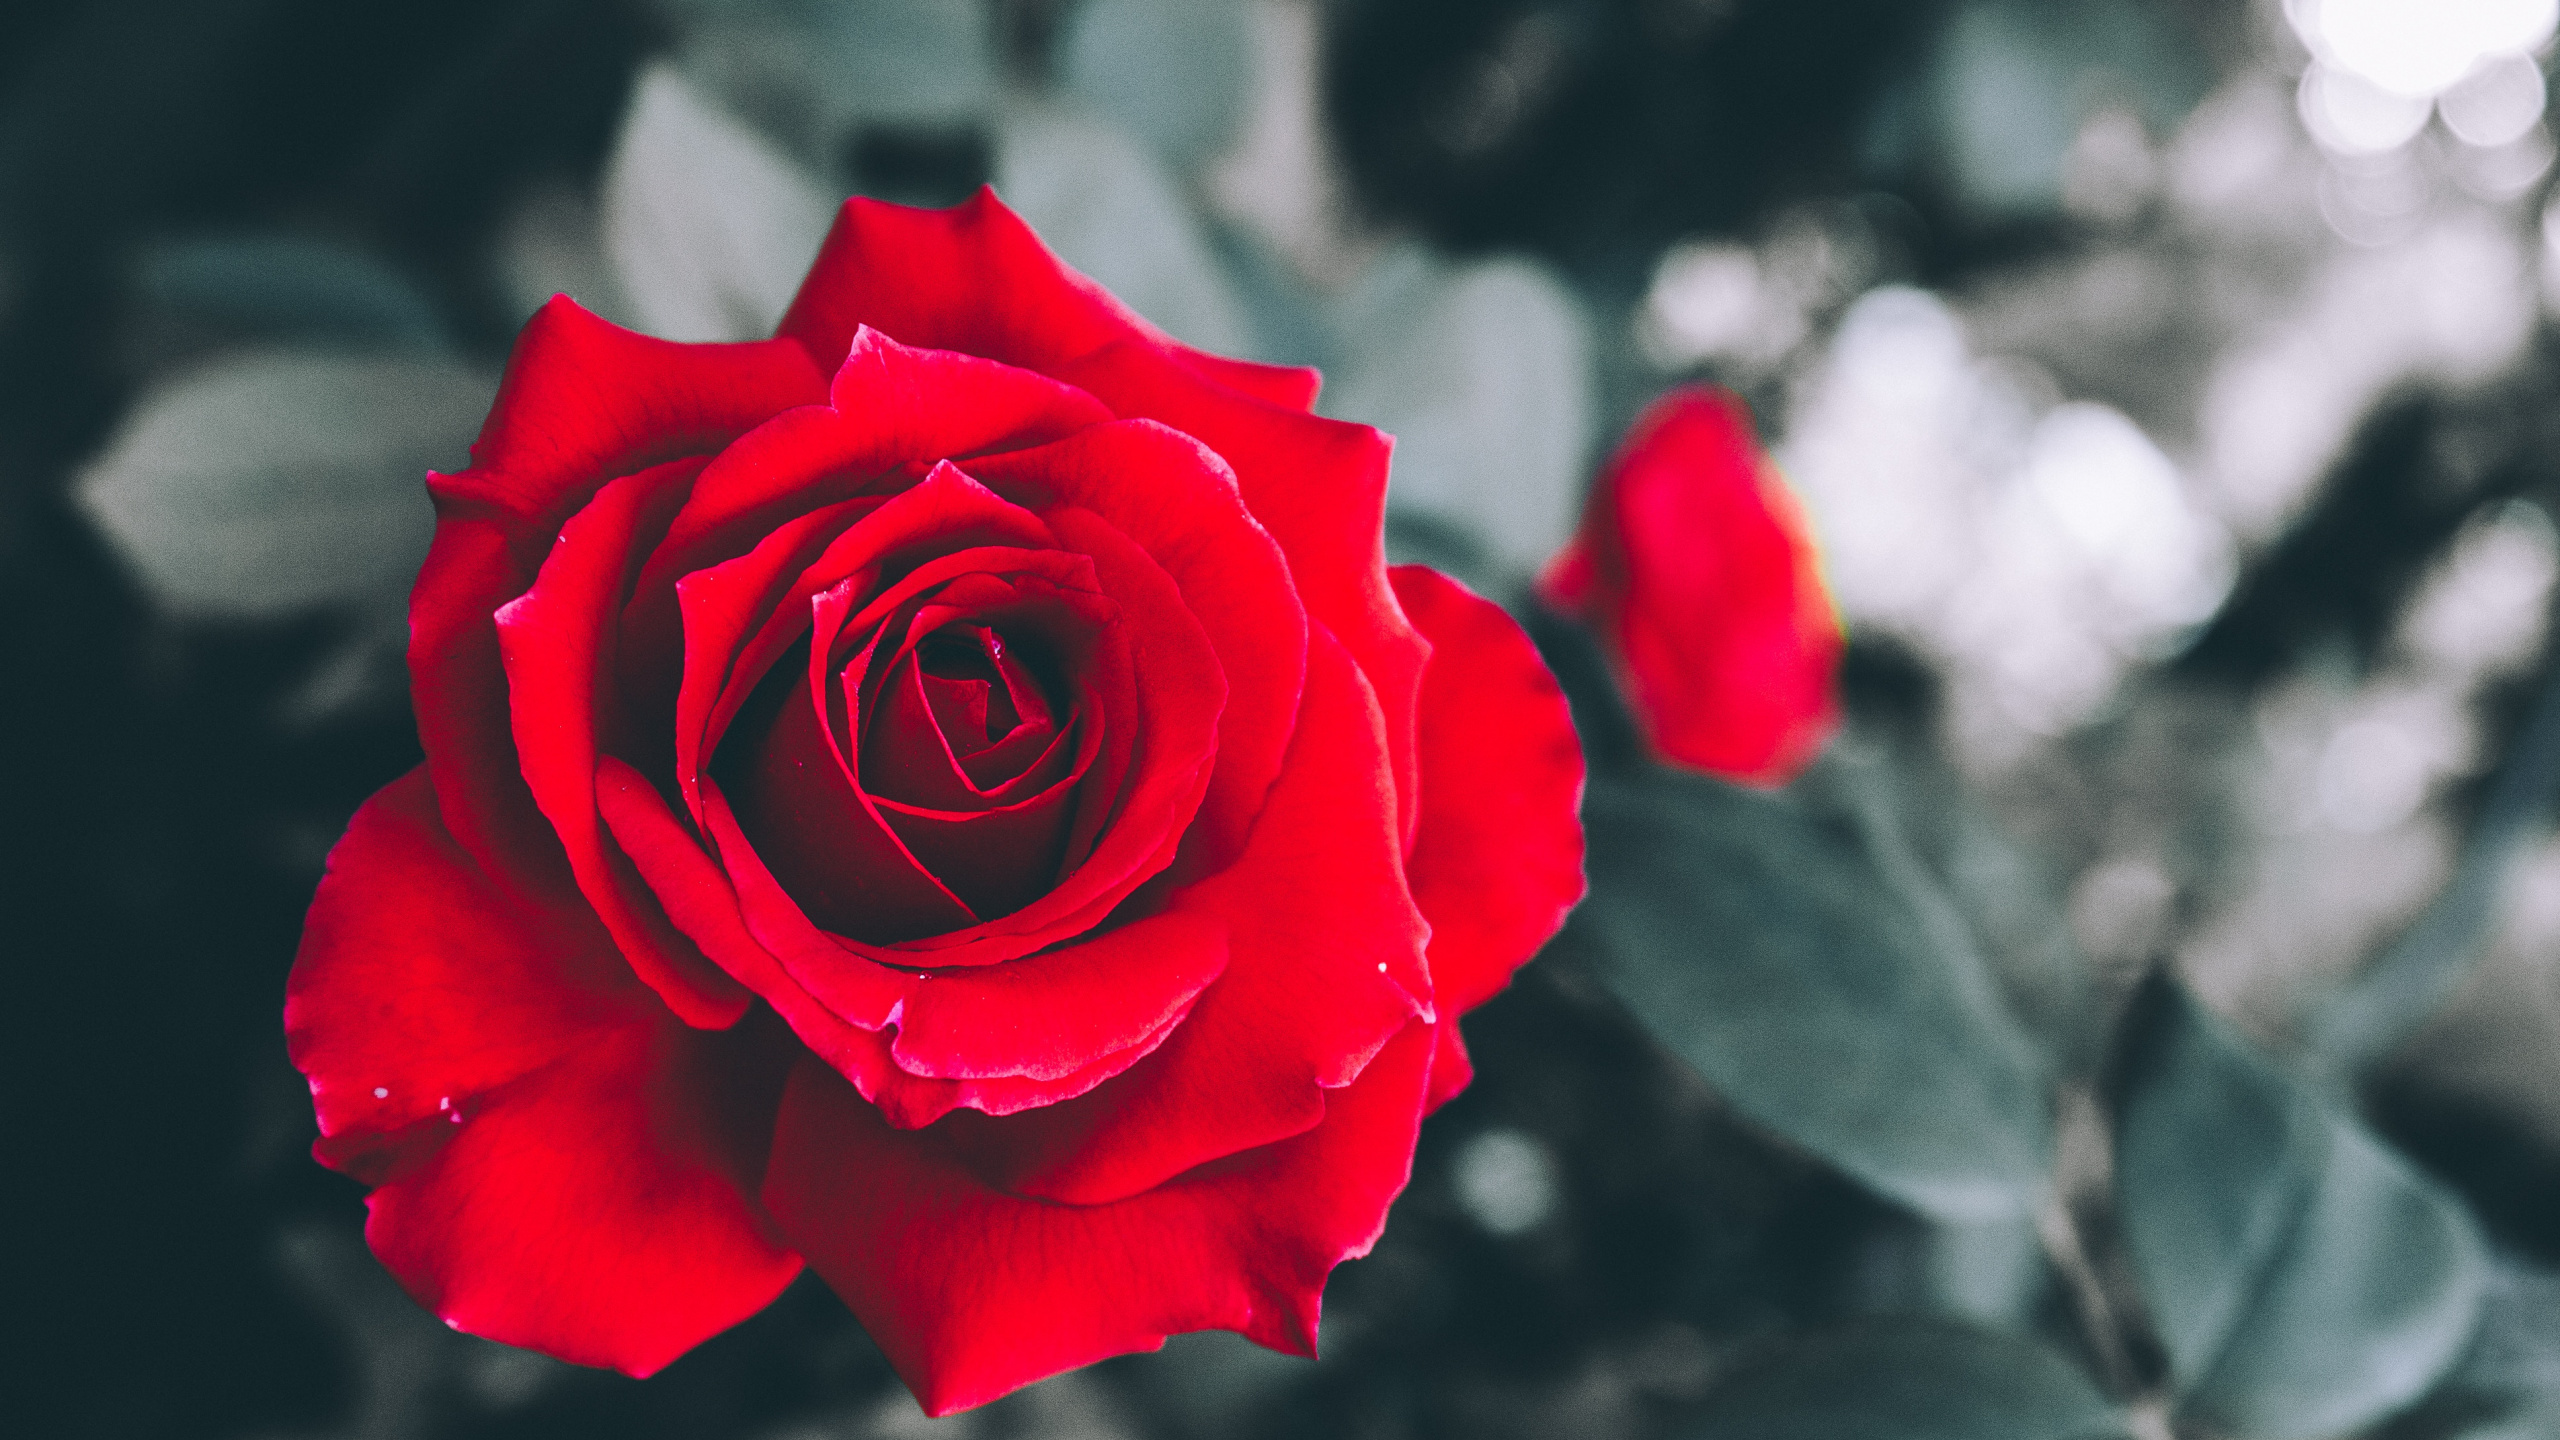 Rosa Roja en Flor en Fotografía de Cerca. Wallpaper in 2560x1440 Resolution